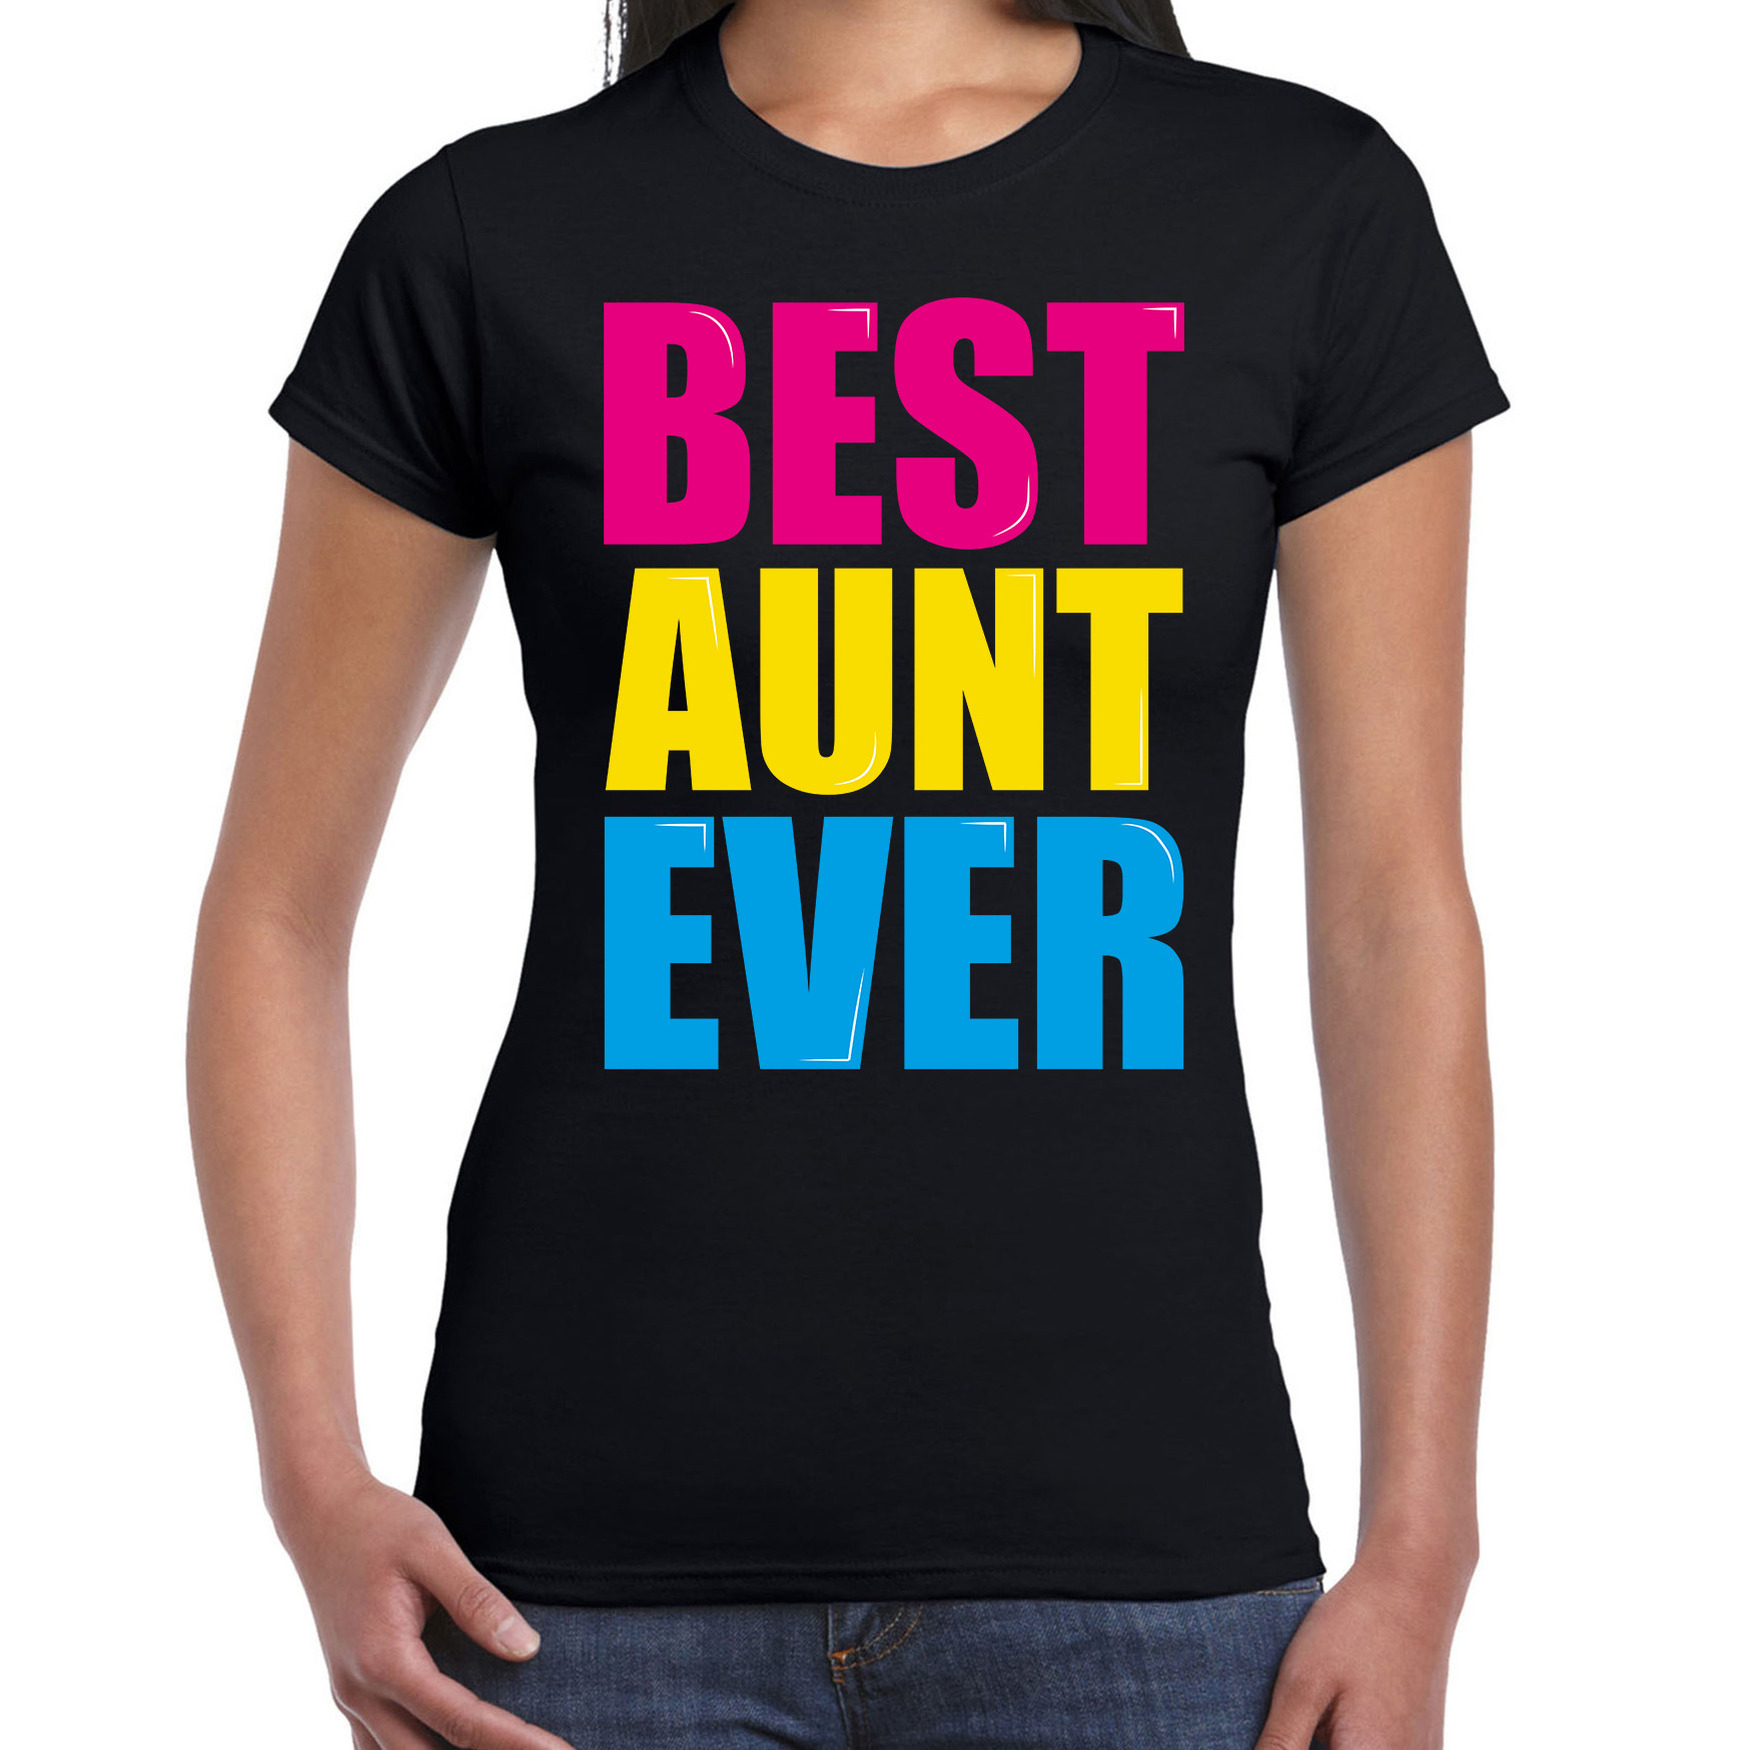 Best aunt ever-Beste tante ooit fun t-shirt zwart dames